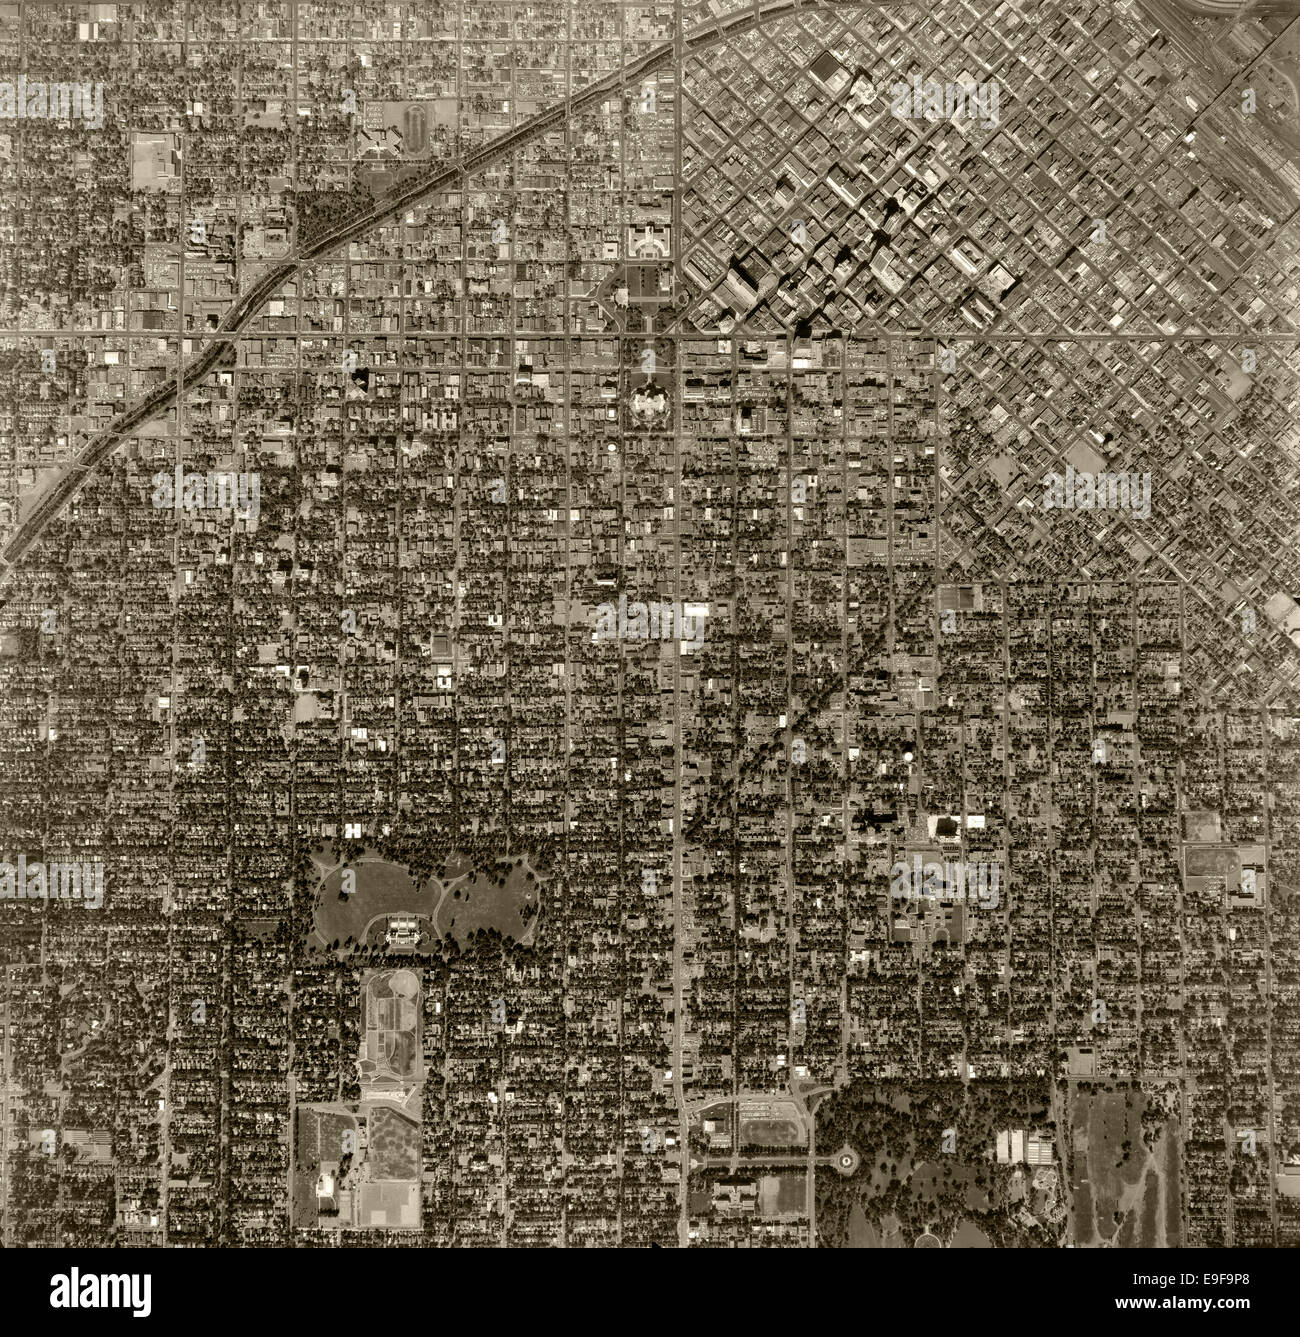 Photographie aérienne historique de Denver, Colorado, 1963 Banque D'Images